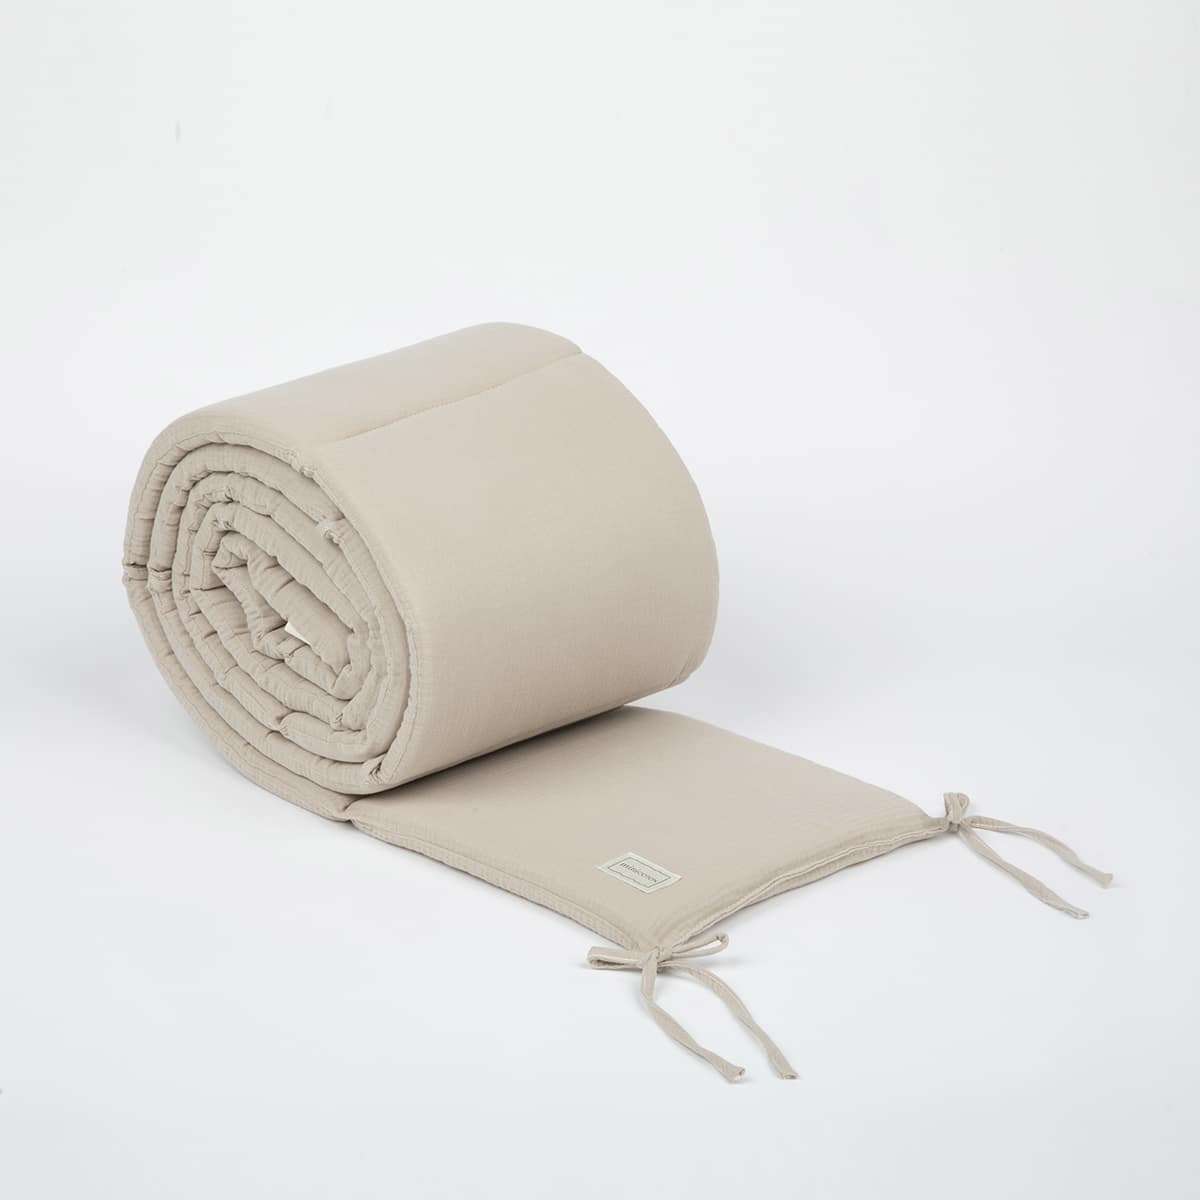 Reductor de cuna bambula Saler - Textiles cuna 120x60 / 140x70